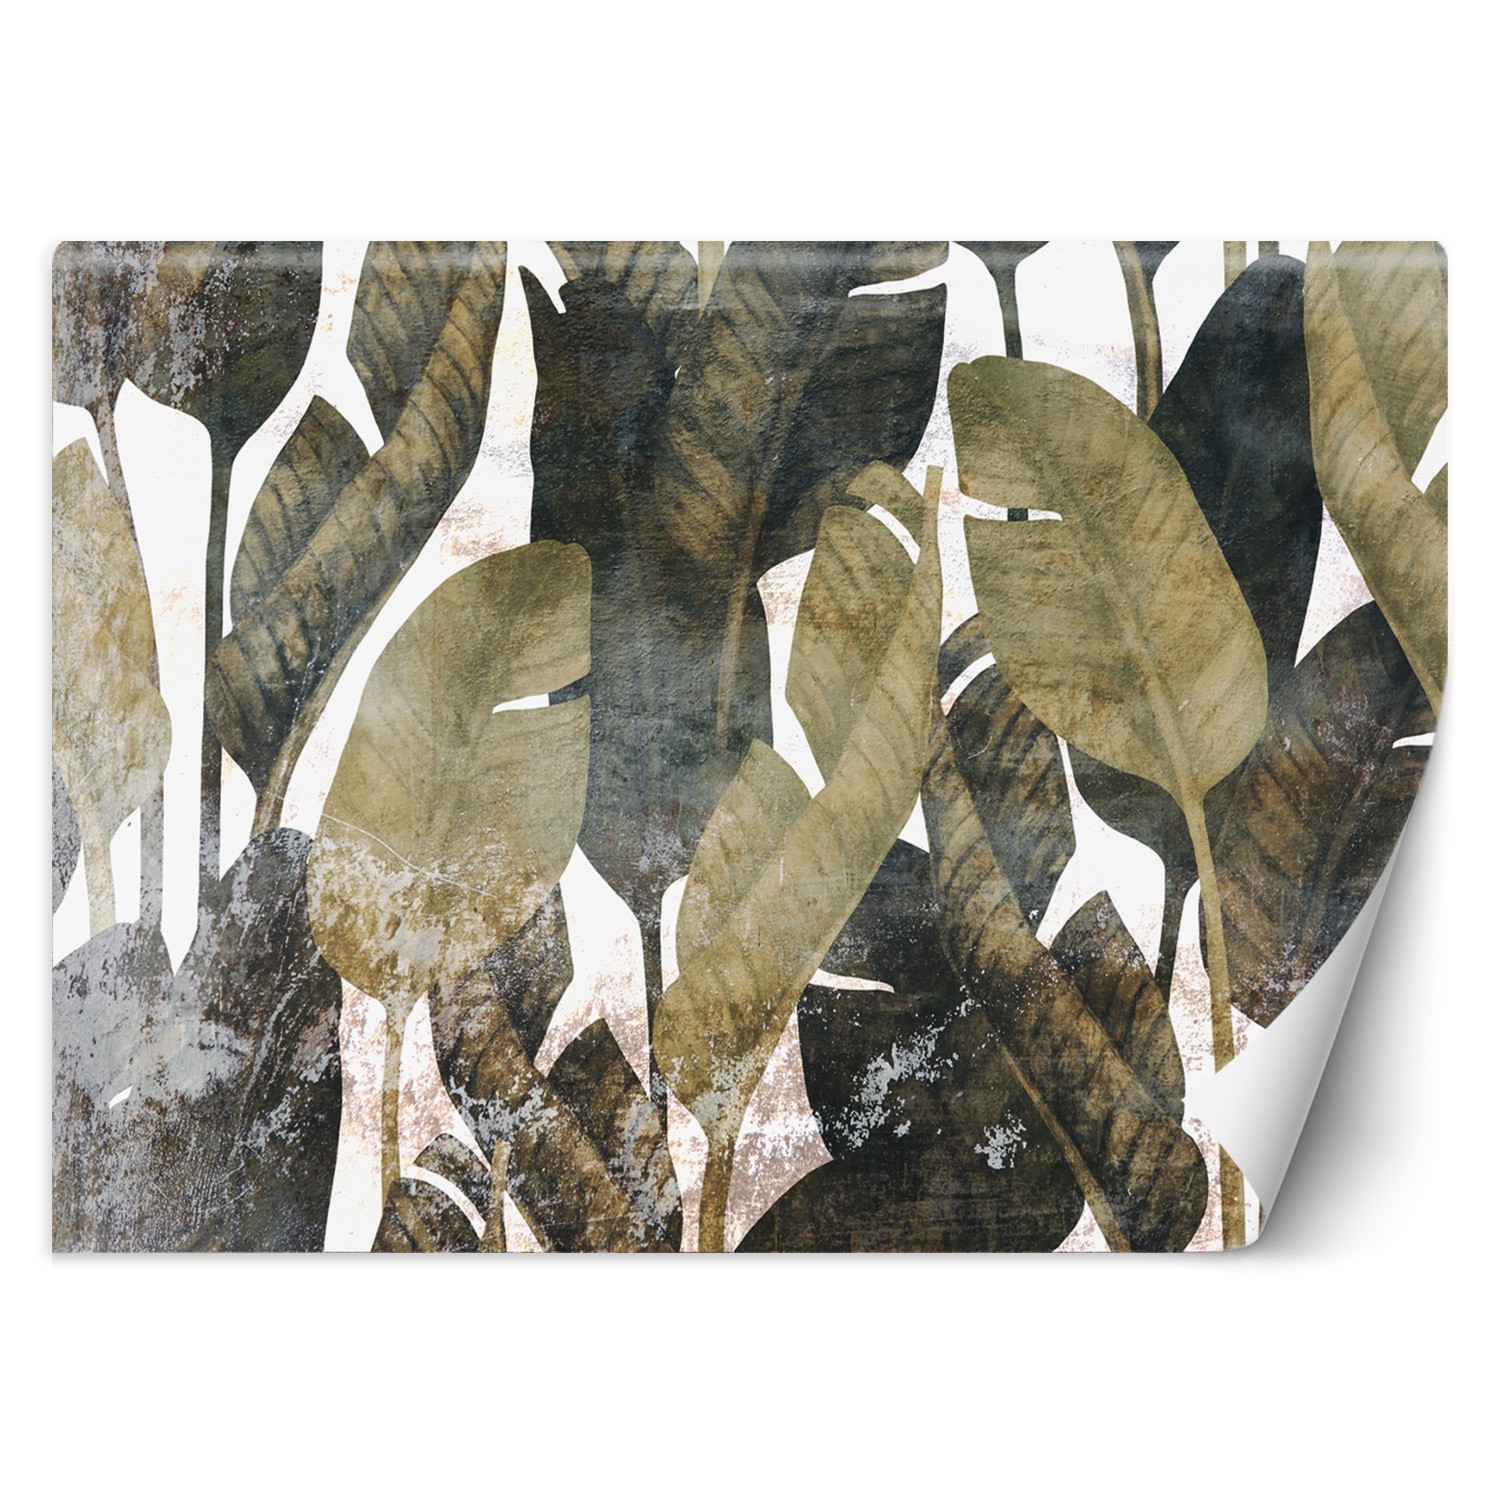 Trend24 – Behang – Bananenblaadjes – Behangpapier – Fotobehang 3D – Behang Woonkamer – 250x175x2 cm – Incl. behanglijm